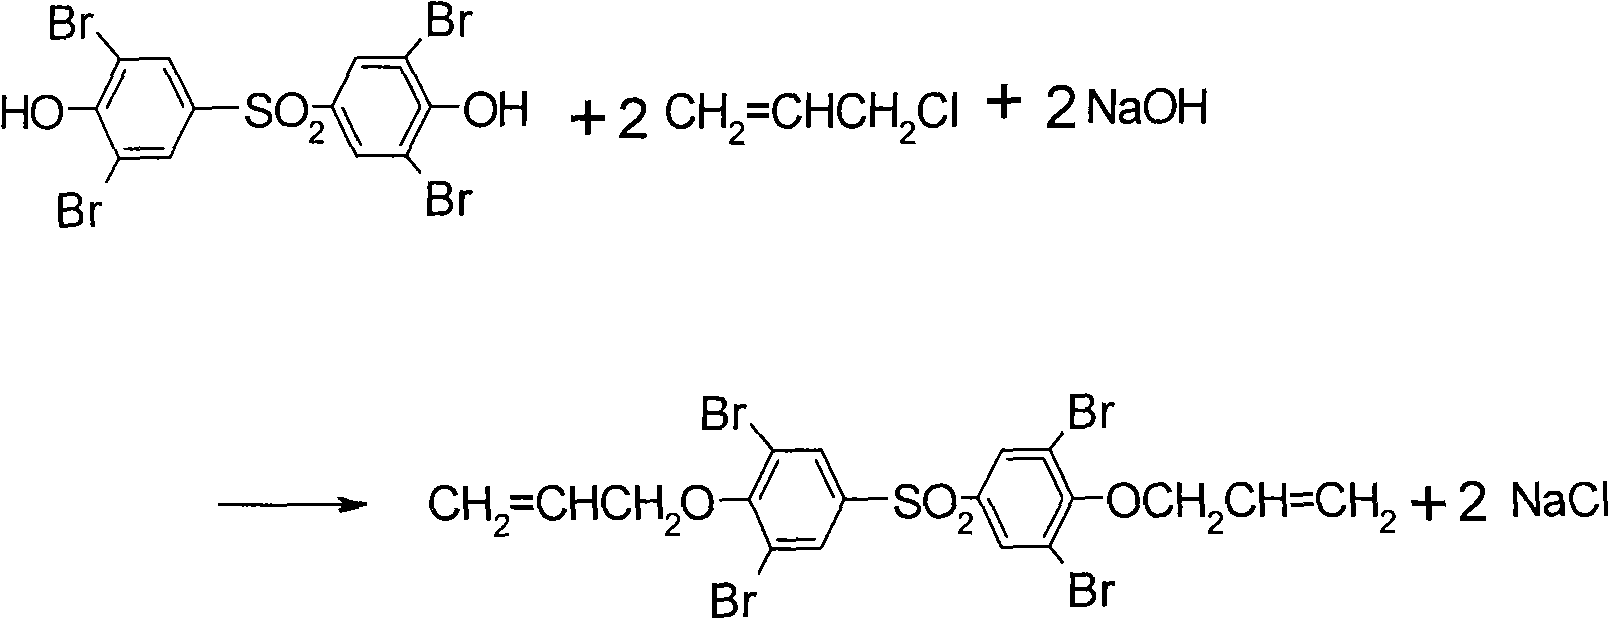 Method of preparing bromobisphenol S diene propyl ether